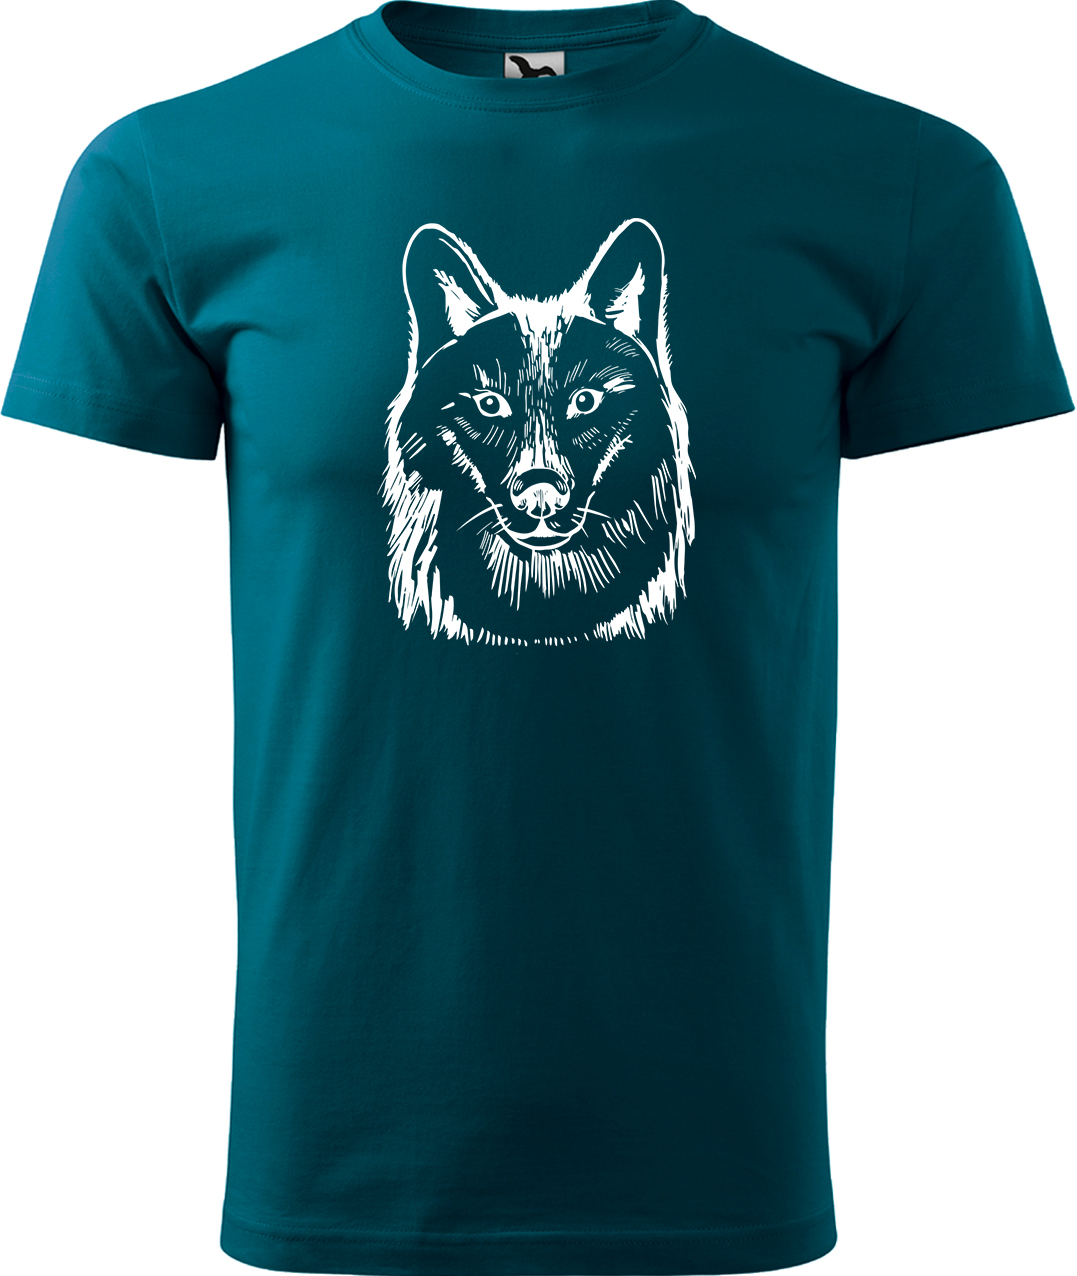 Pánské tričko s vlkem - Kresba vlka Velikost: L, Barva: Petrolejová (93), Střih: pánský